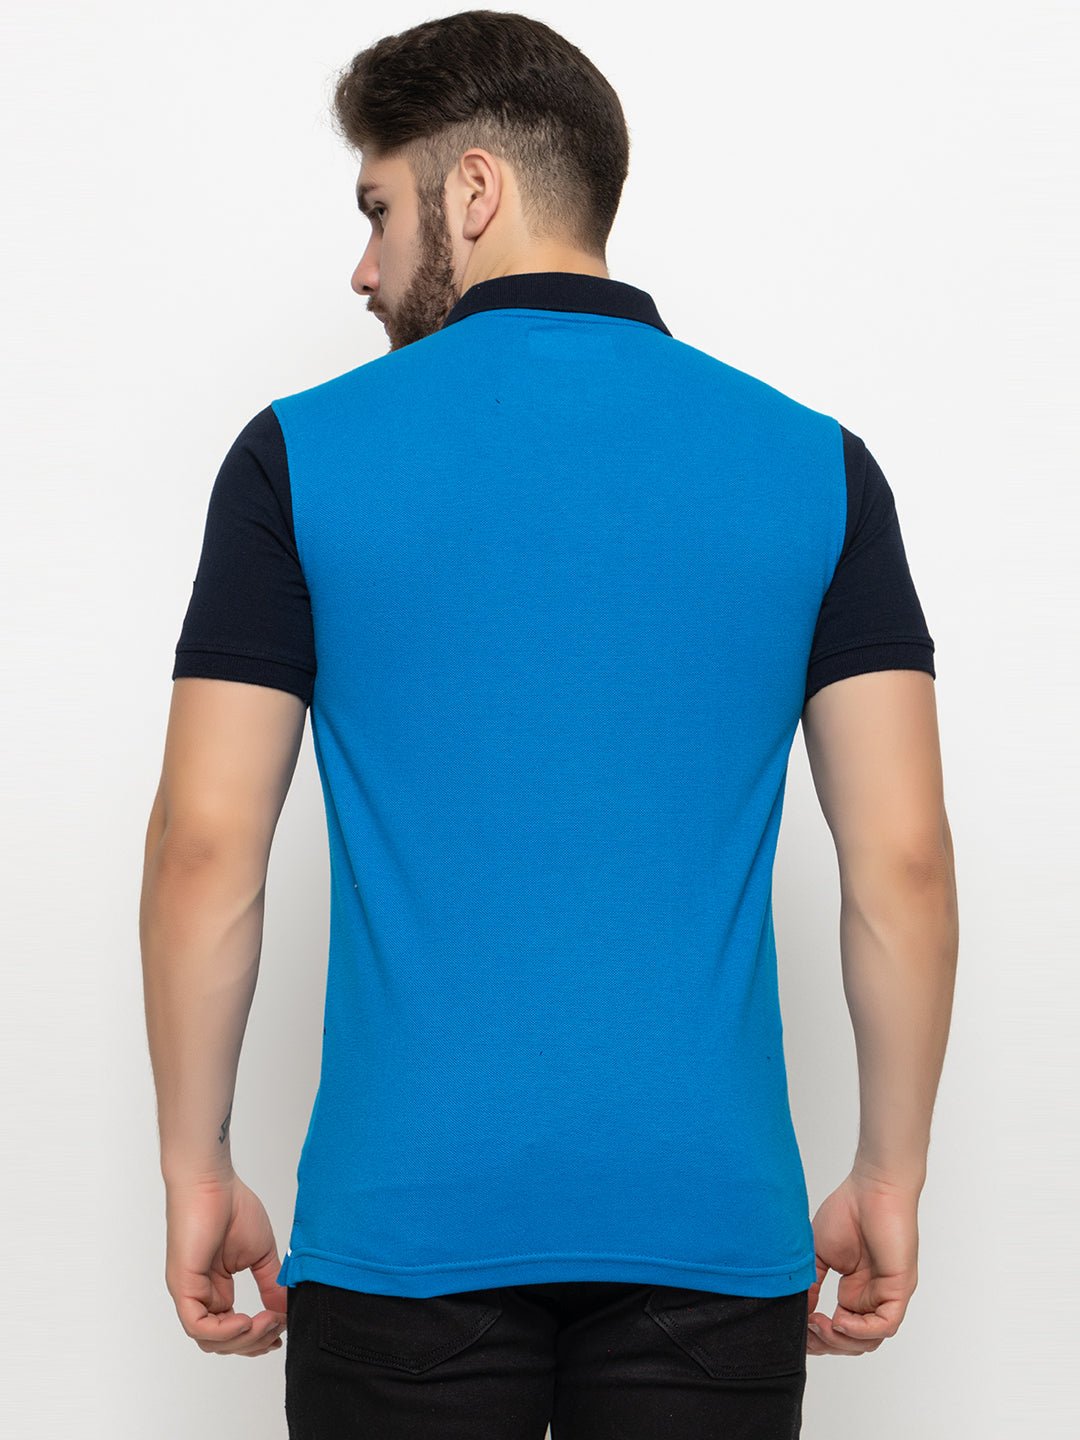 Teal Blue Polo T-Shirt - clubyork